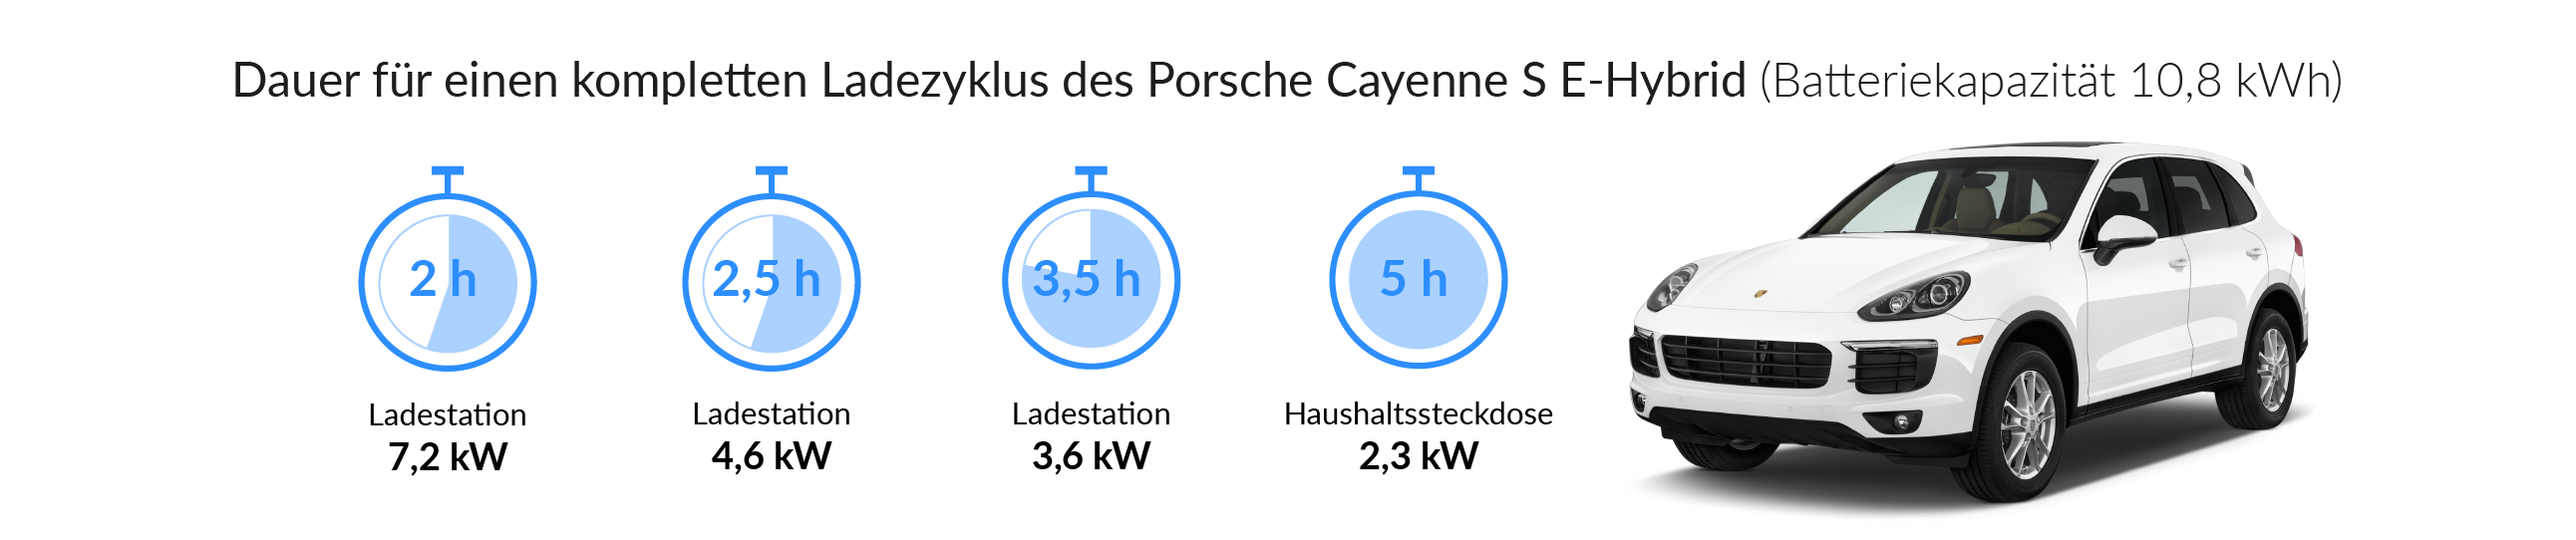 Ladezeiten des Porsche Cayenne S E-Hybrid